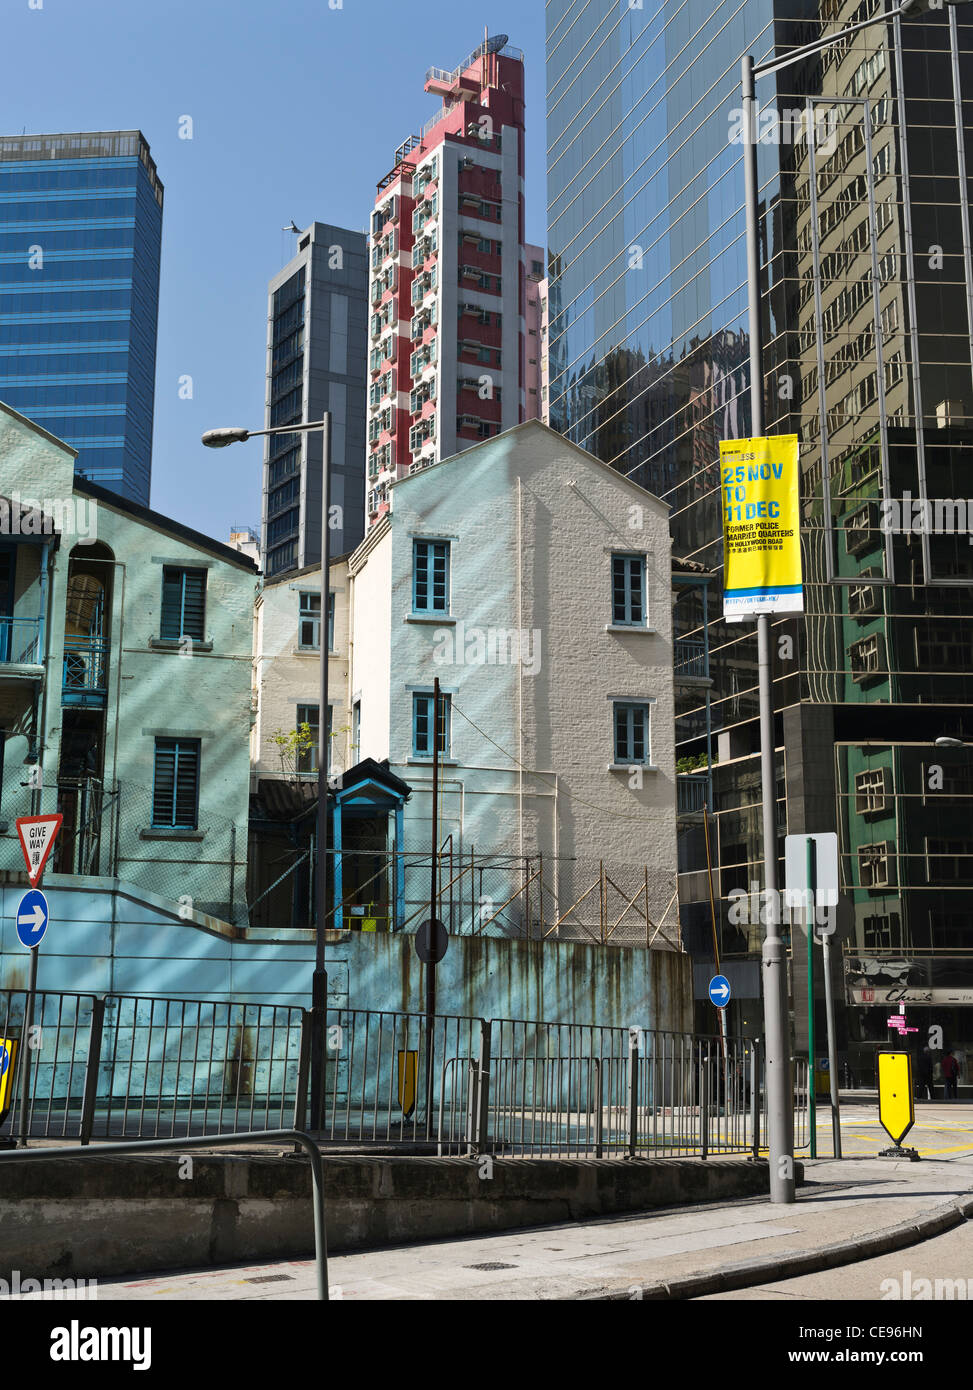 Dh CENTRAL HONG KONG vieille maison coloniale bâtiments et de nouvelles tours gratte-ciel moderne chine Banque D'Images